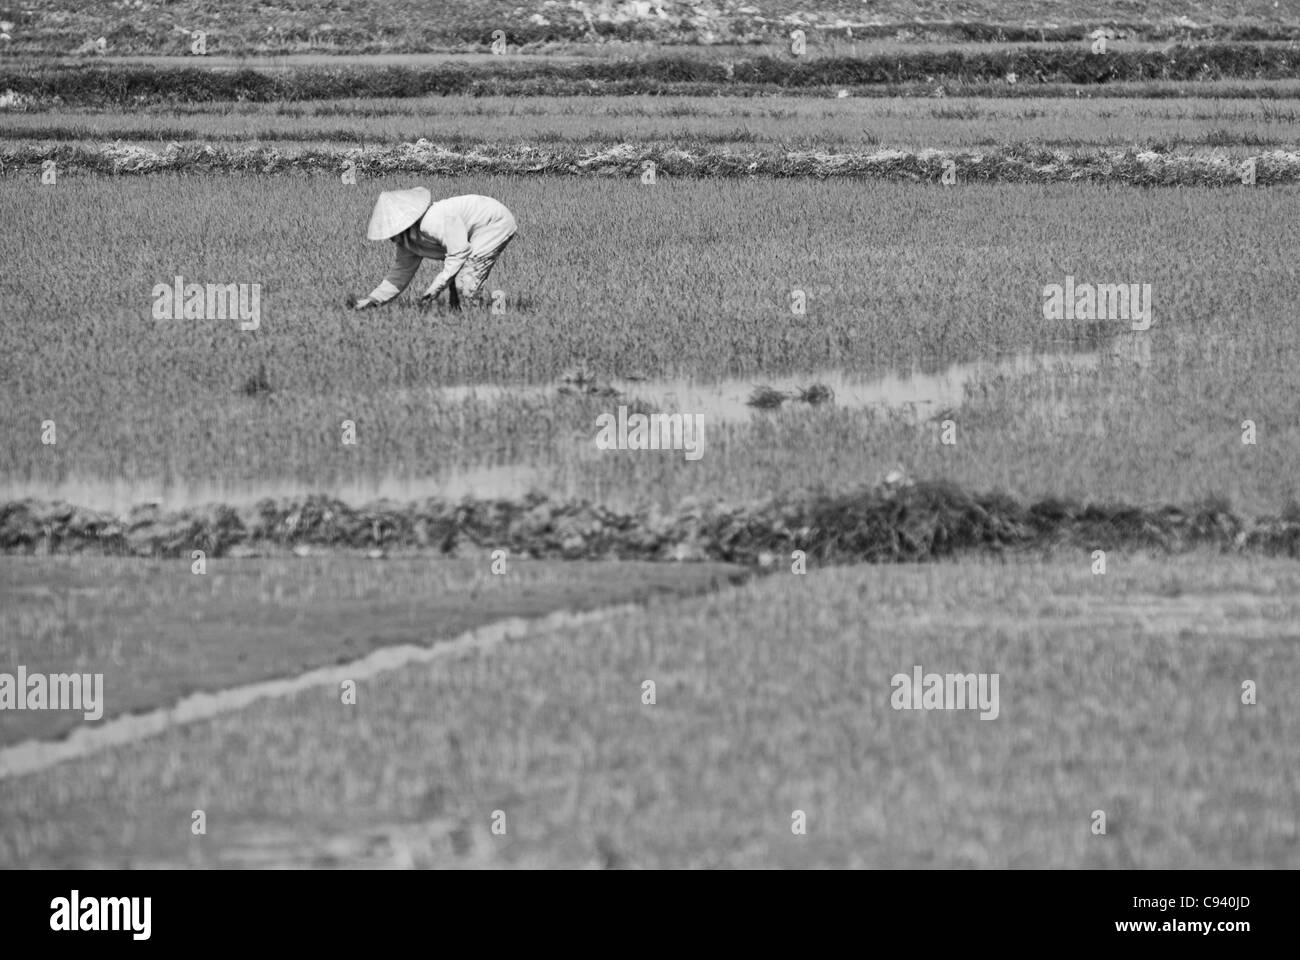 Asien, Vietnam, nr. Hoi an ein. Menschen, die in einem Reisfeld in der Nähe von Hoi an ein. Stockfoto